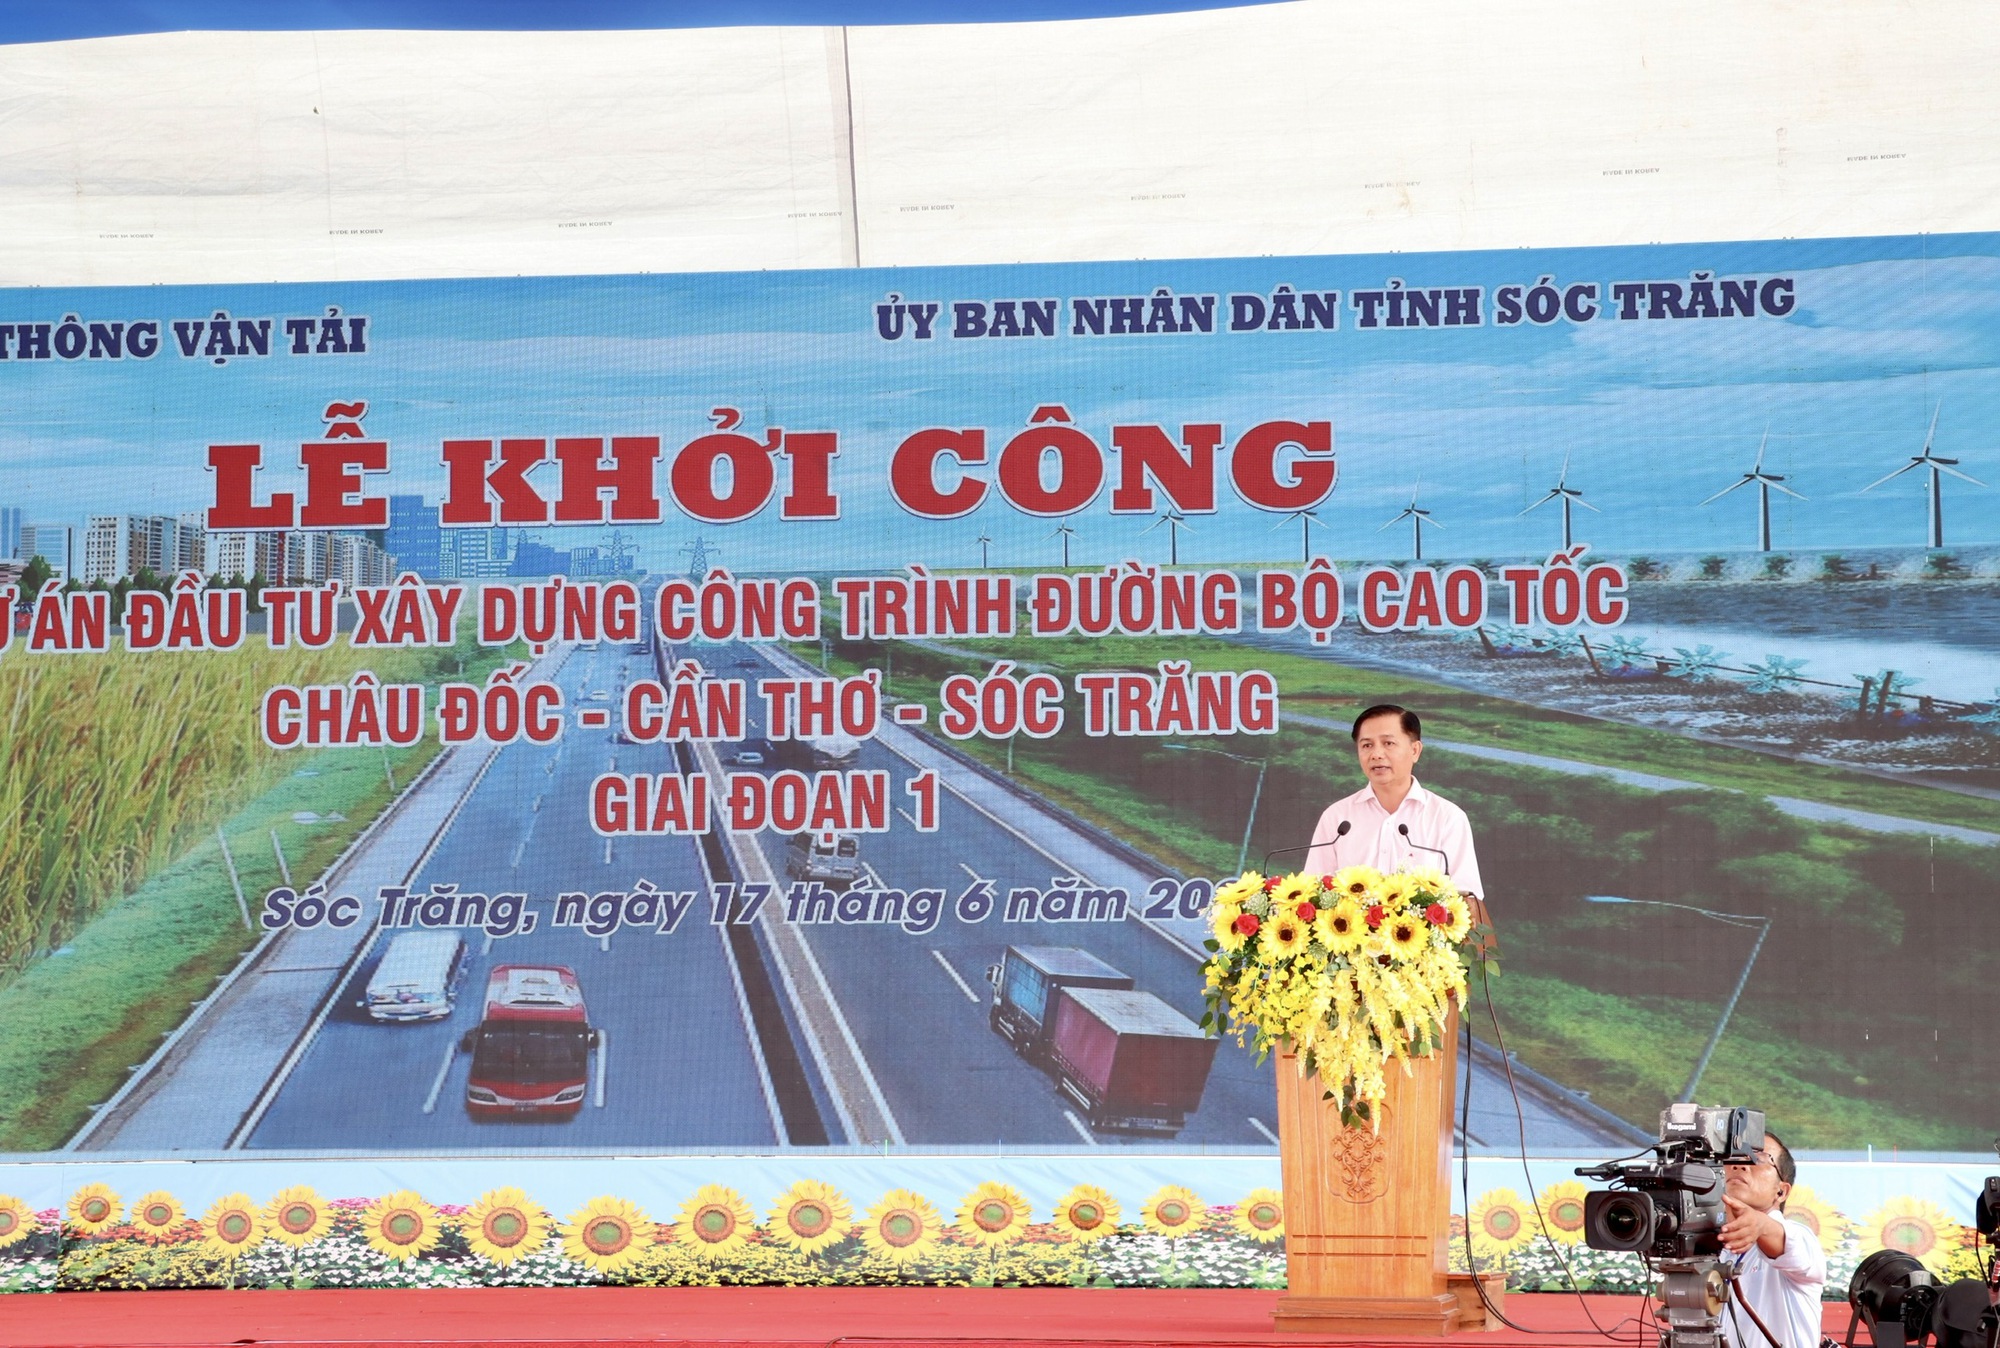 Trực tiếp khởi công cao tốc Châu Đốc - Cần Thơ - Sóc Trăng gần 44.700 tỷ đồng - Ảnh 2.